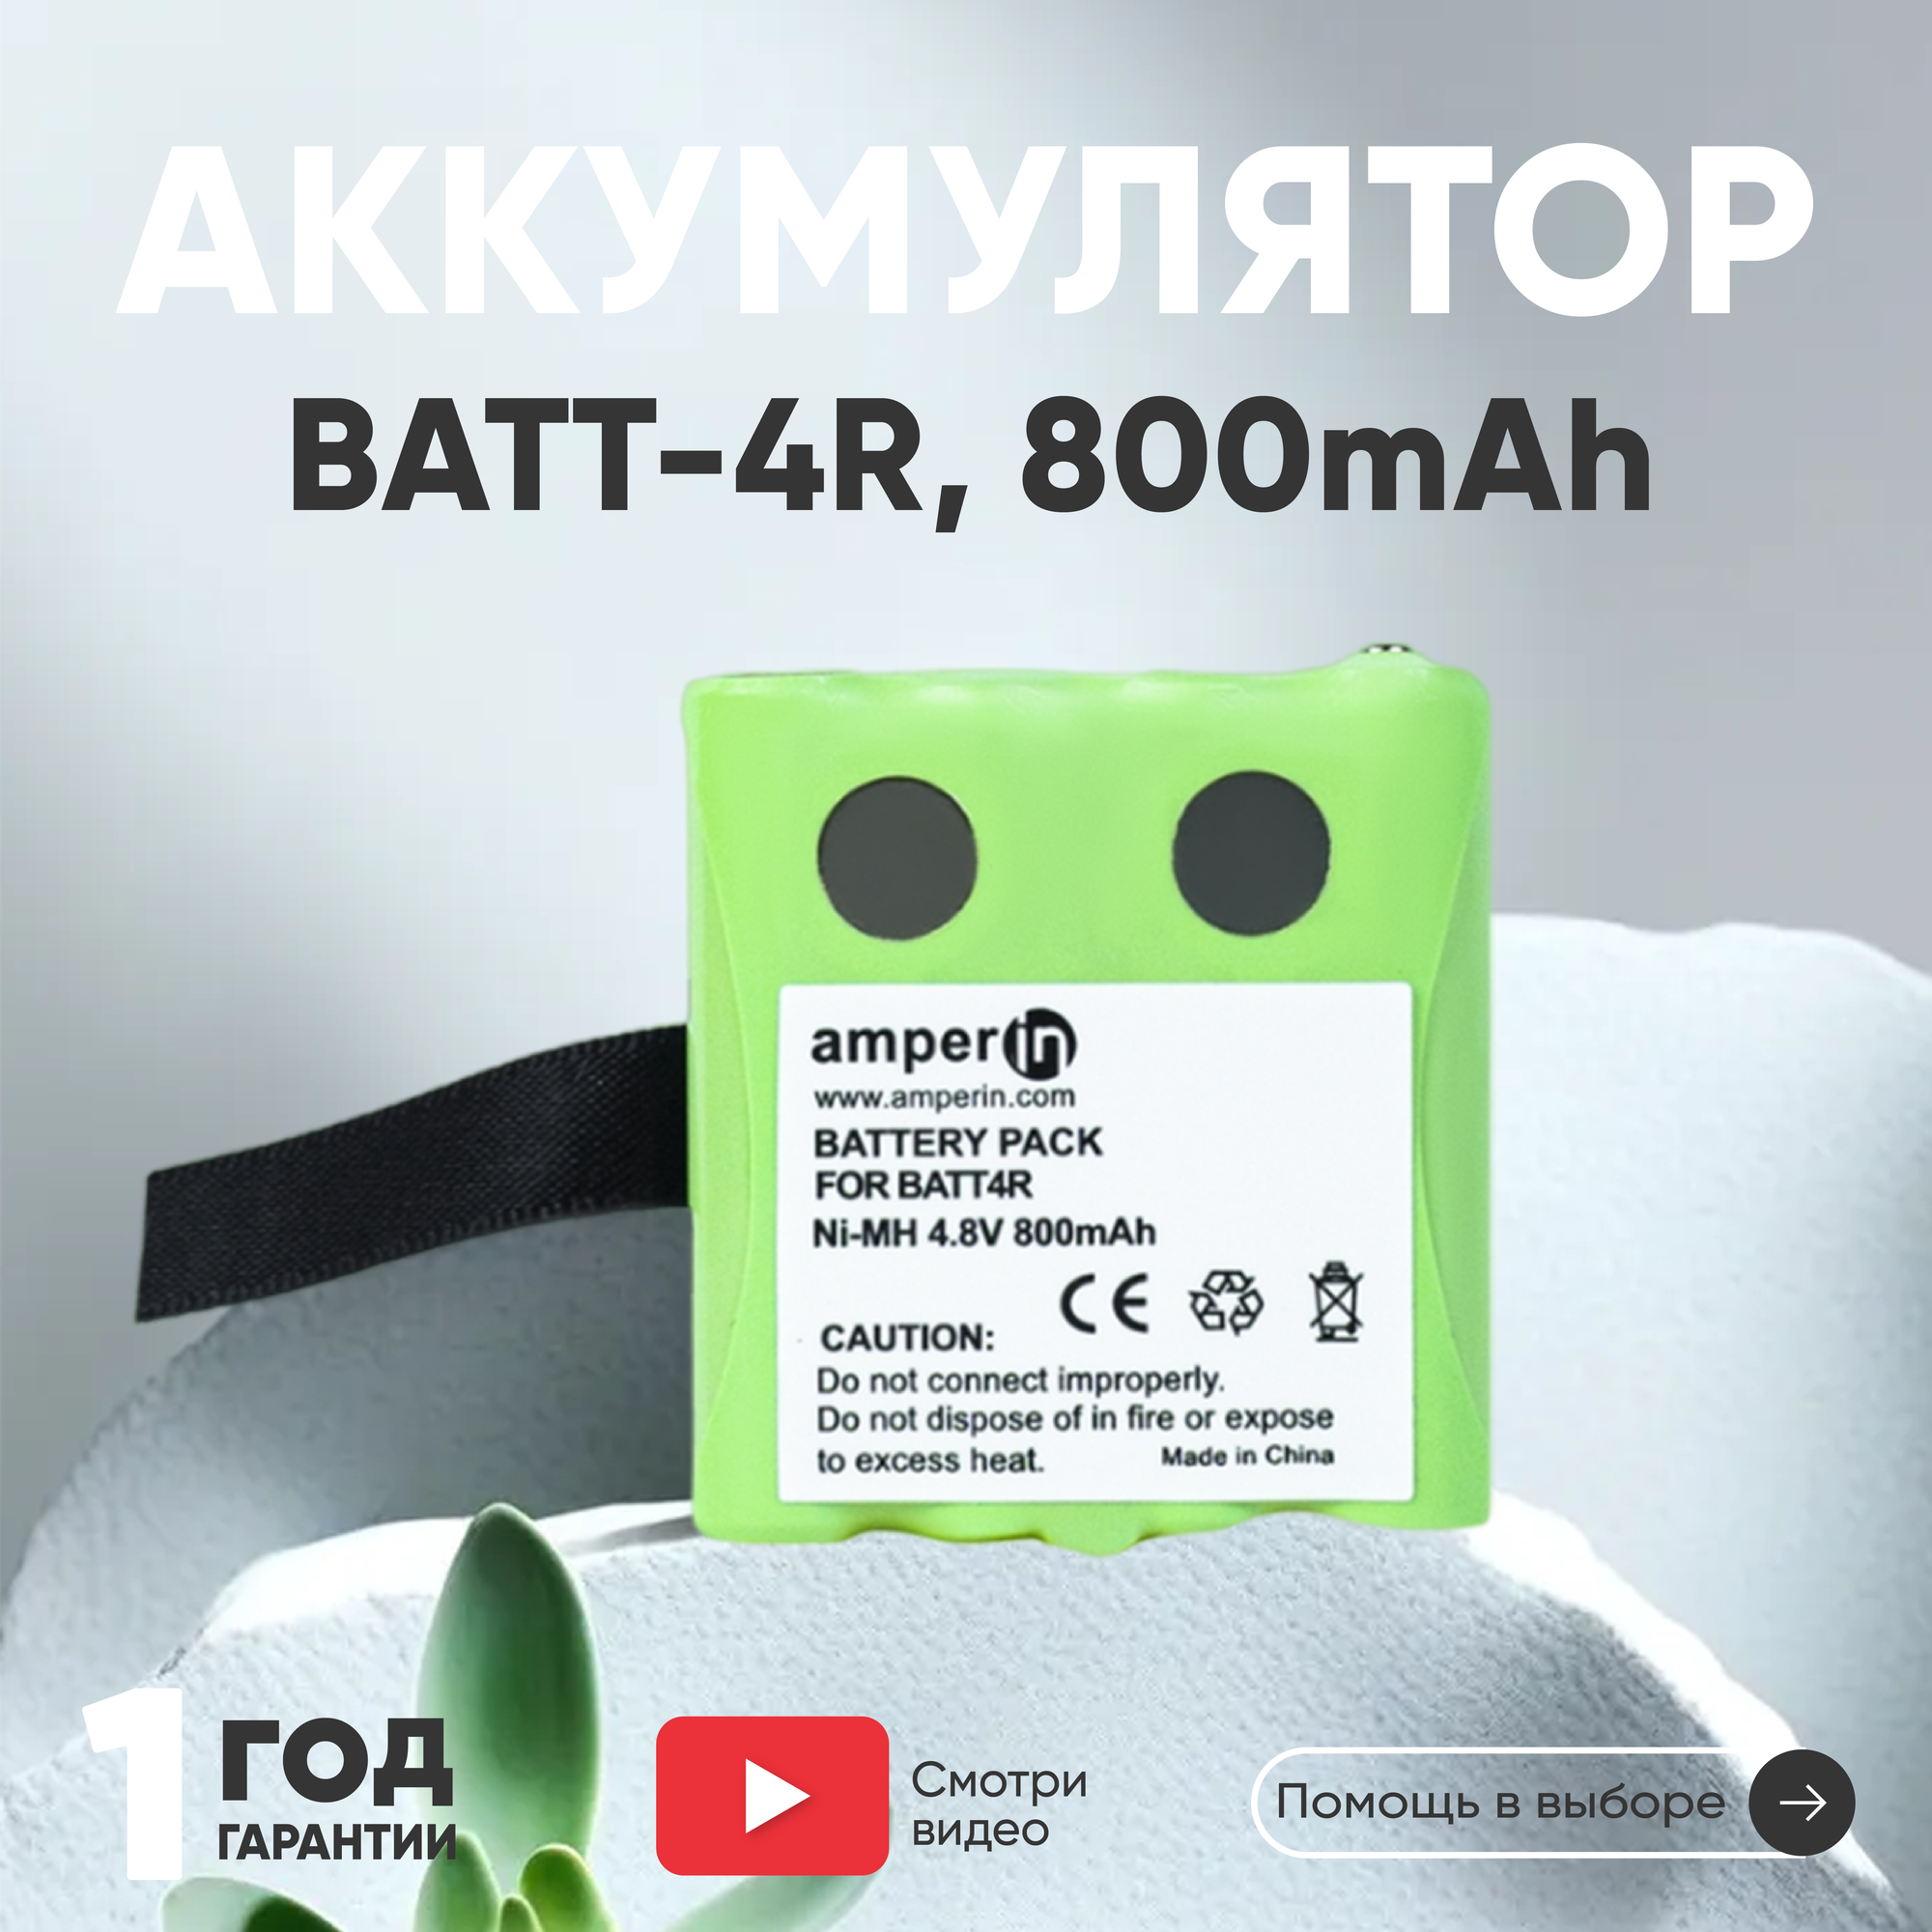 Аккумуляторная батарея (АКБ) Amperin BATT-4R для рации (радиостанции) Midland G223, G300, G300, 800мАч, 4.8В, Ni-Mh